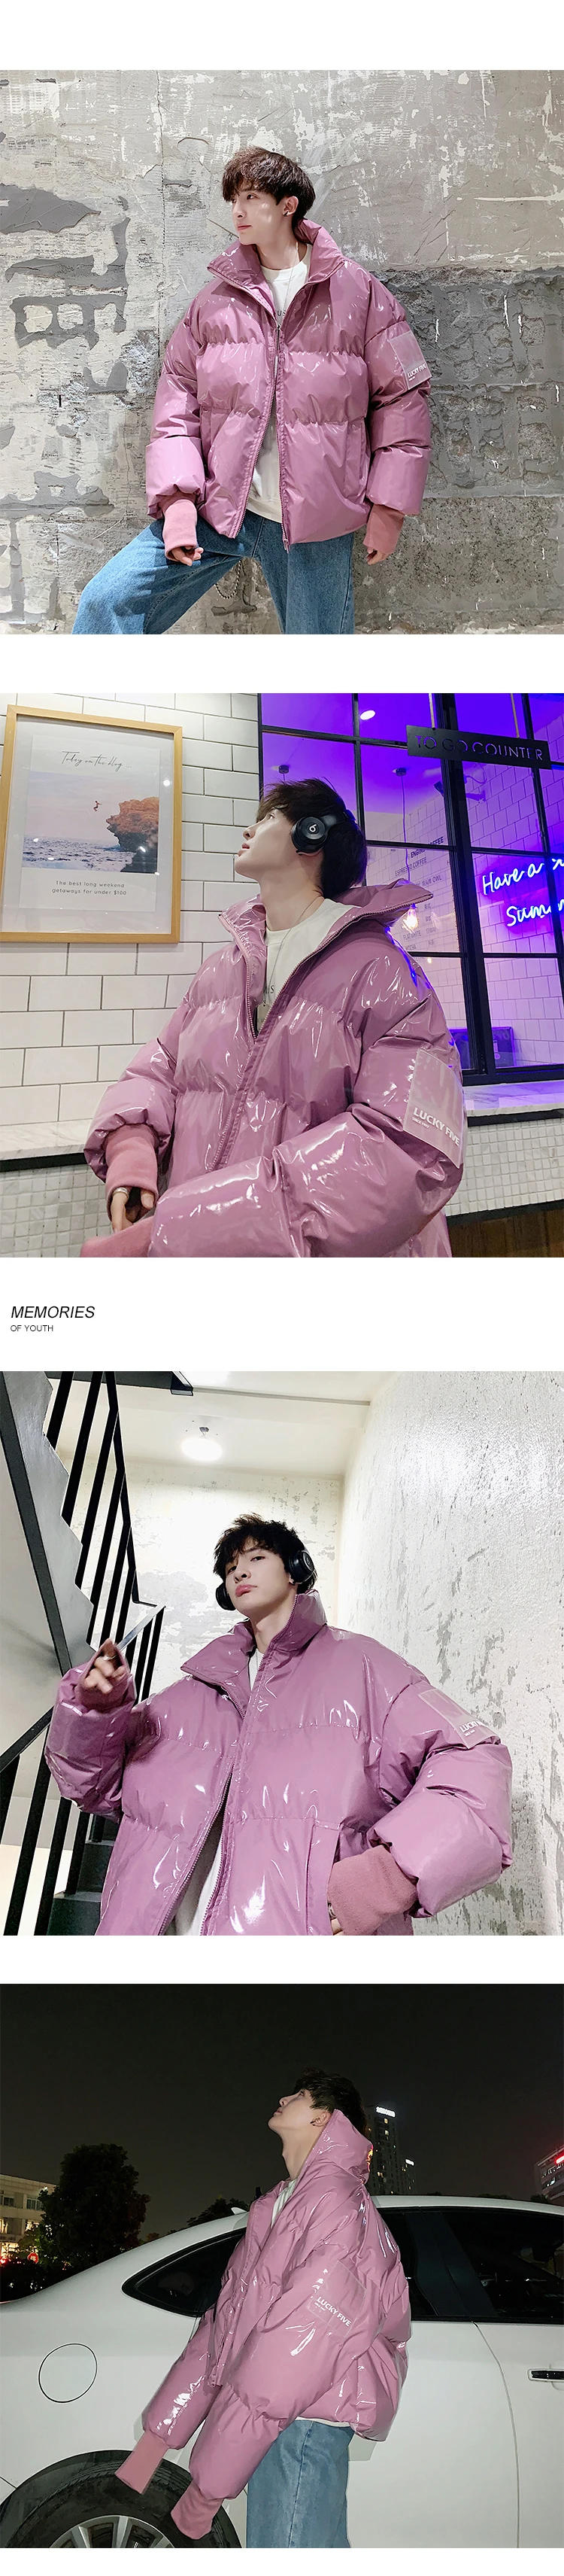 Модный корейский стиль INS мужской яркий лицо зима мужской зимний пуховик Одежда хип хоп парка яркий пузырь пальто